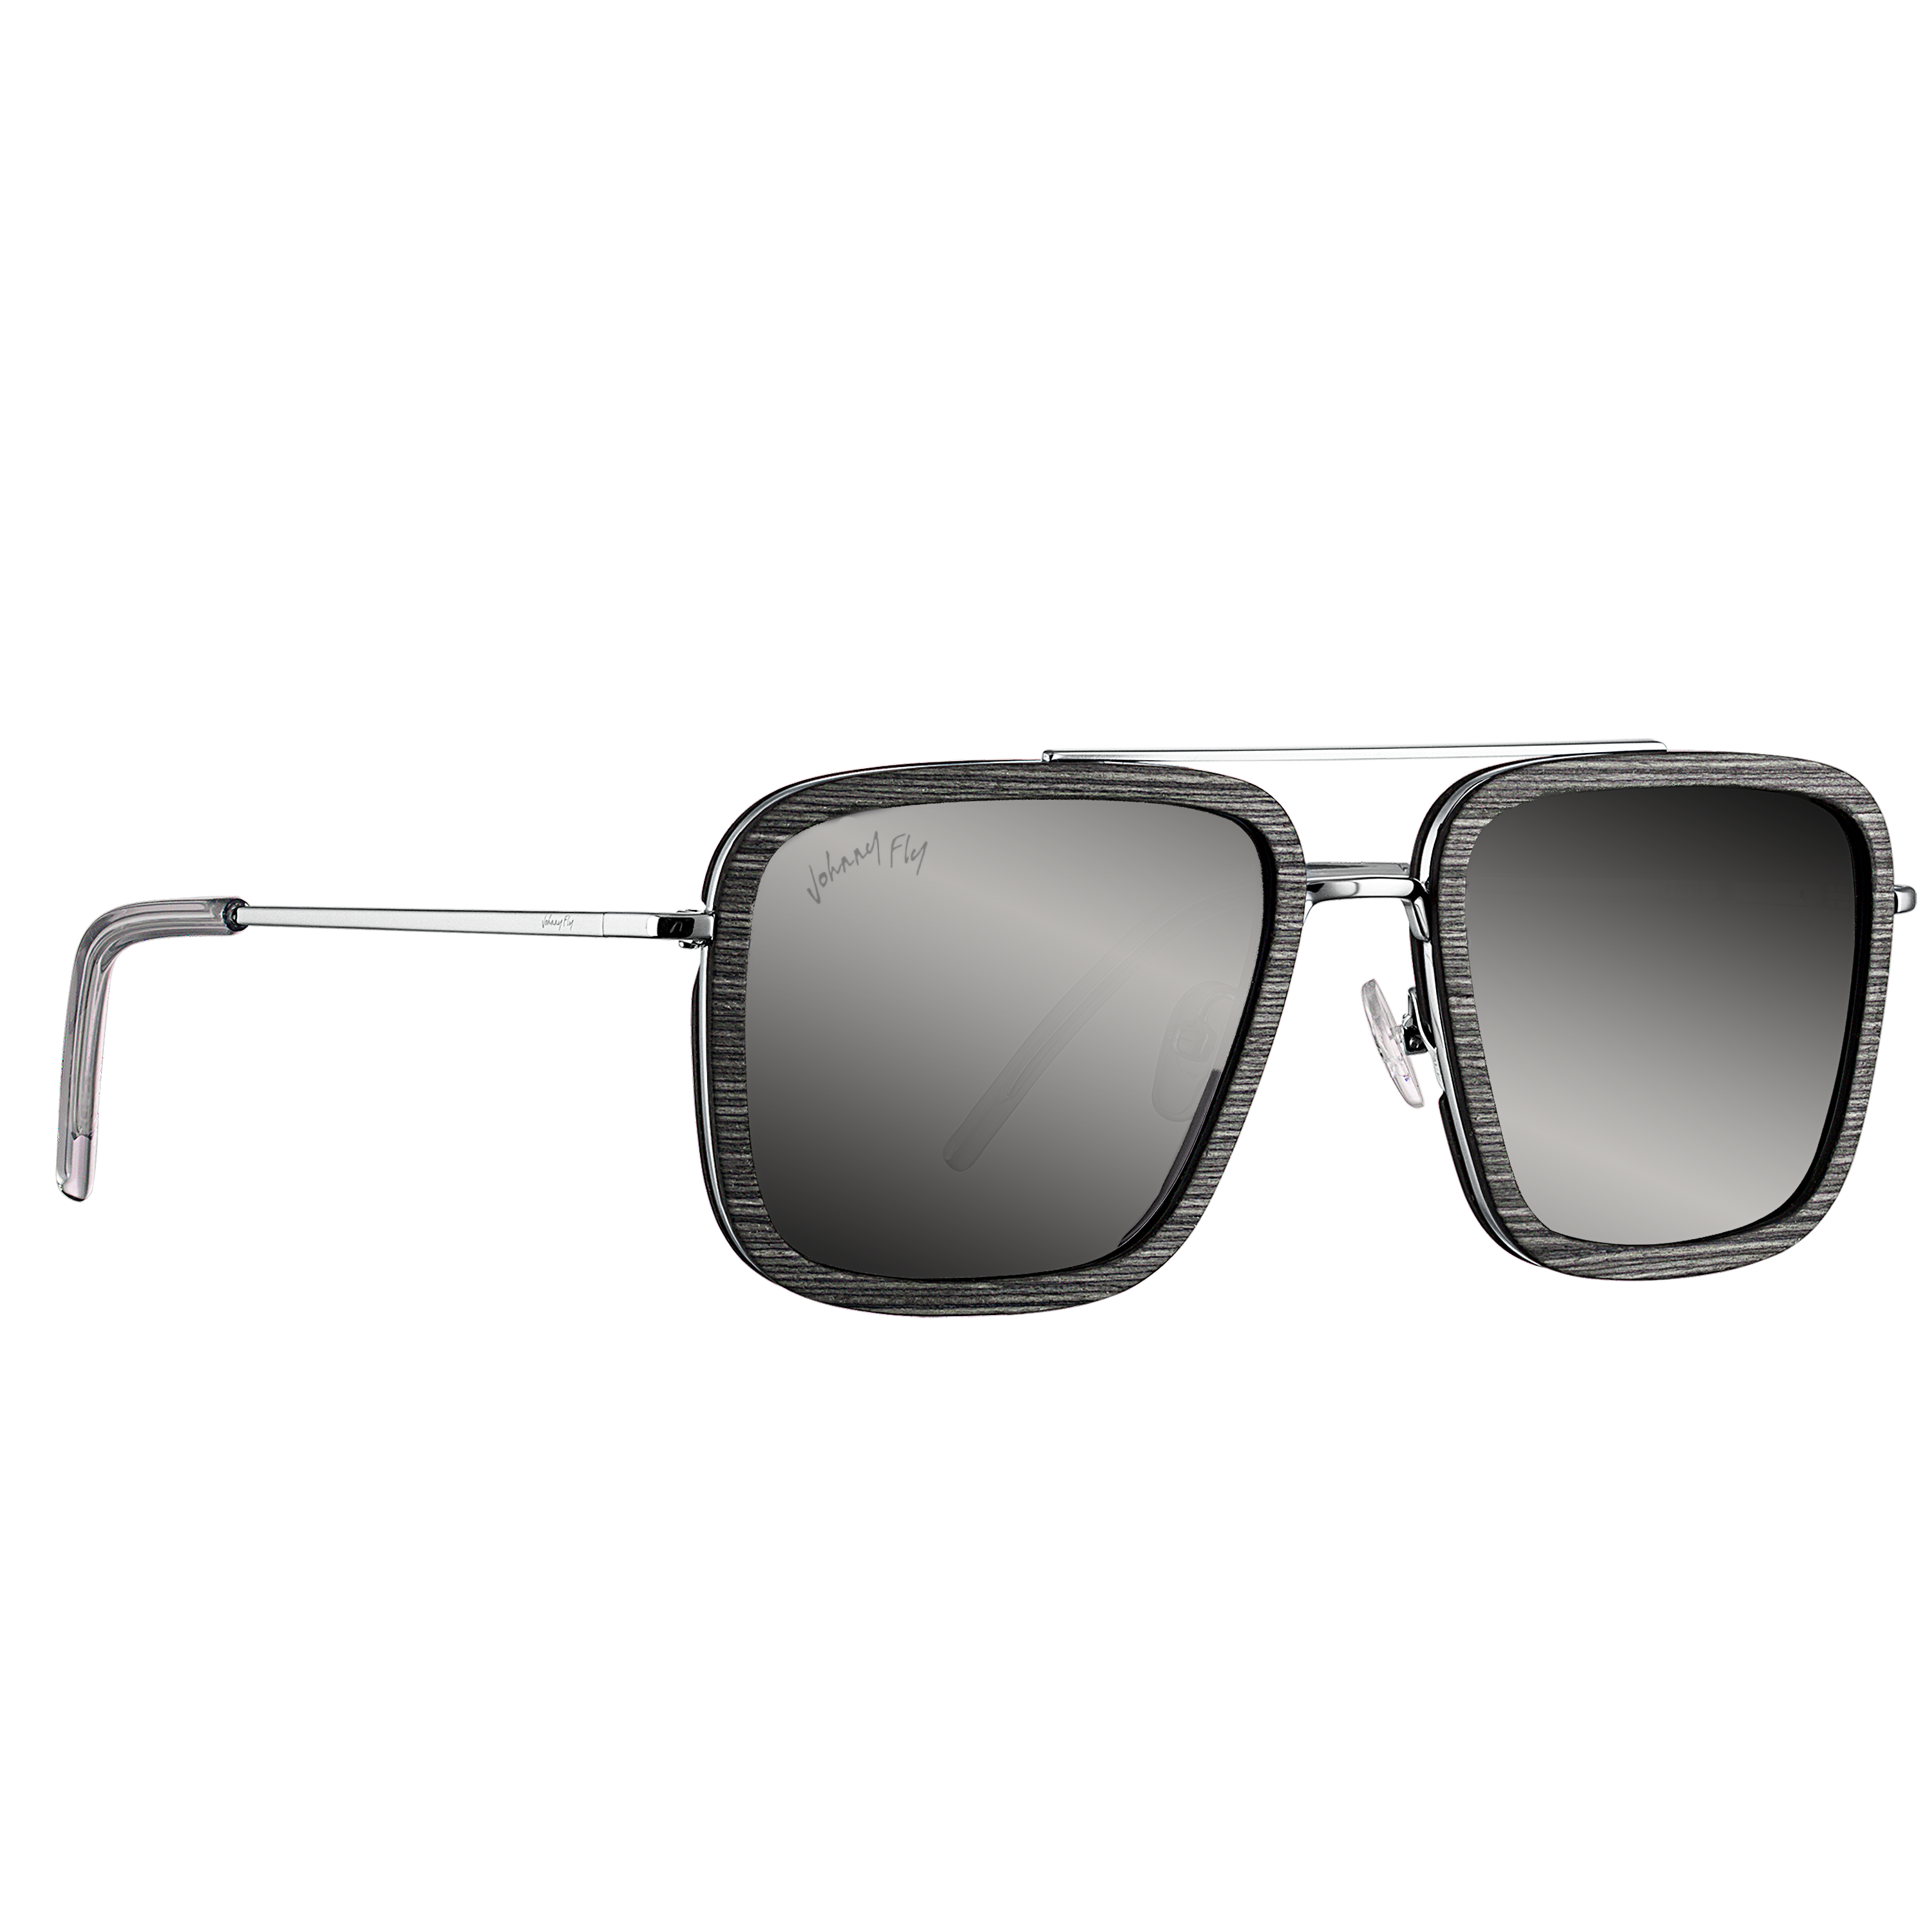 LAFORGE - Polished Nickel - Sunglasses - Johnny Fly Eyewear | 